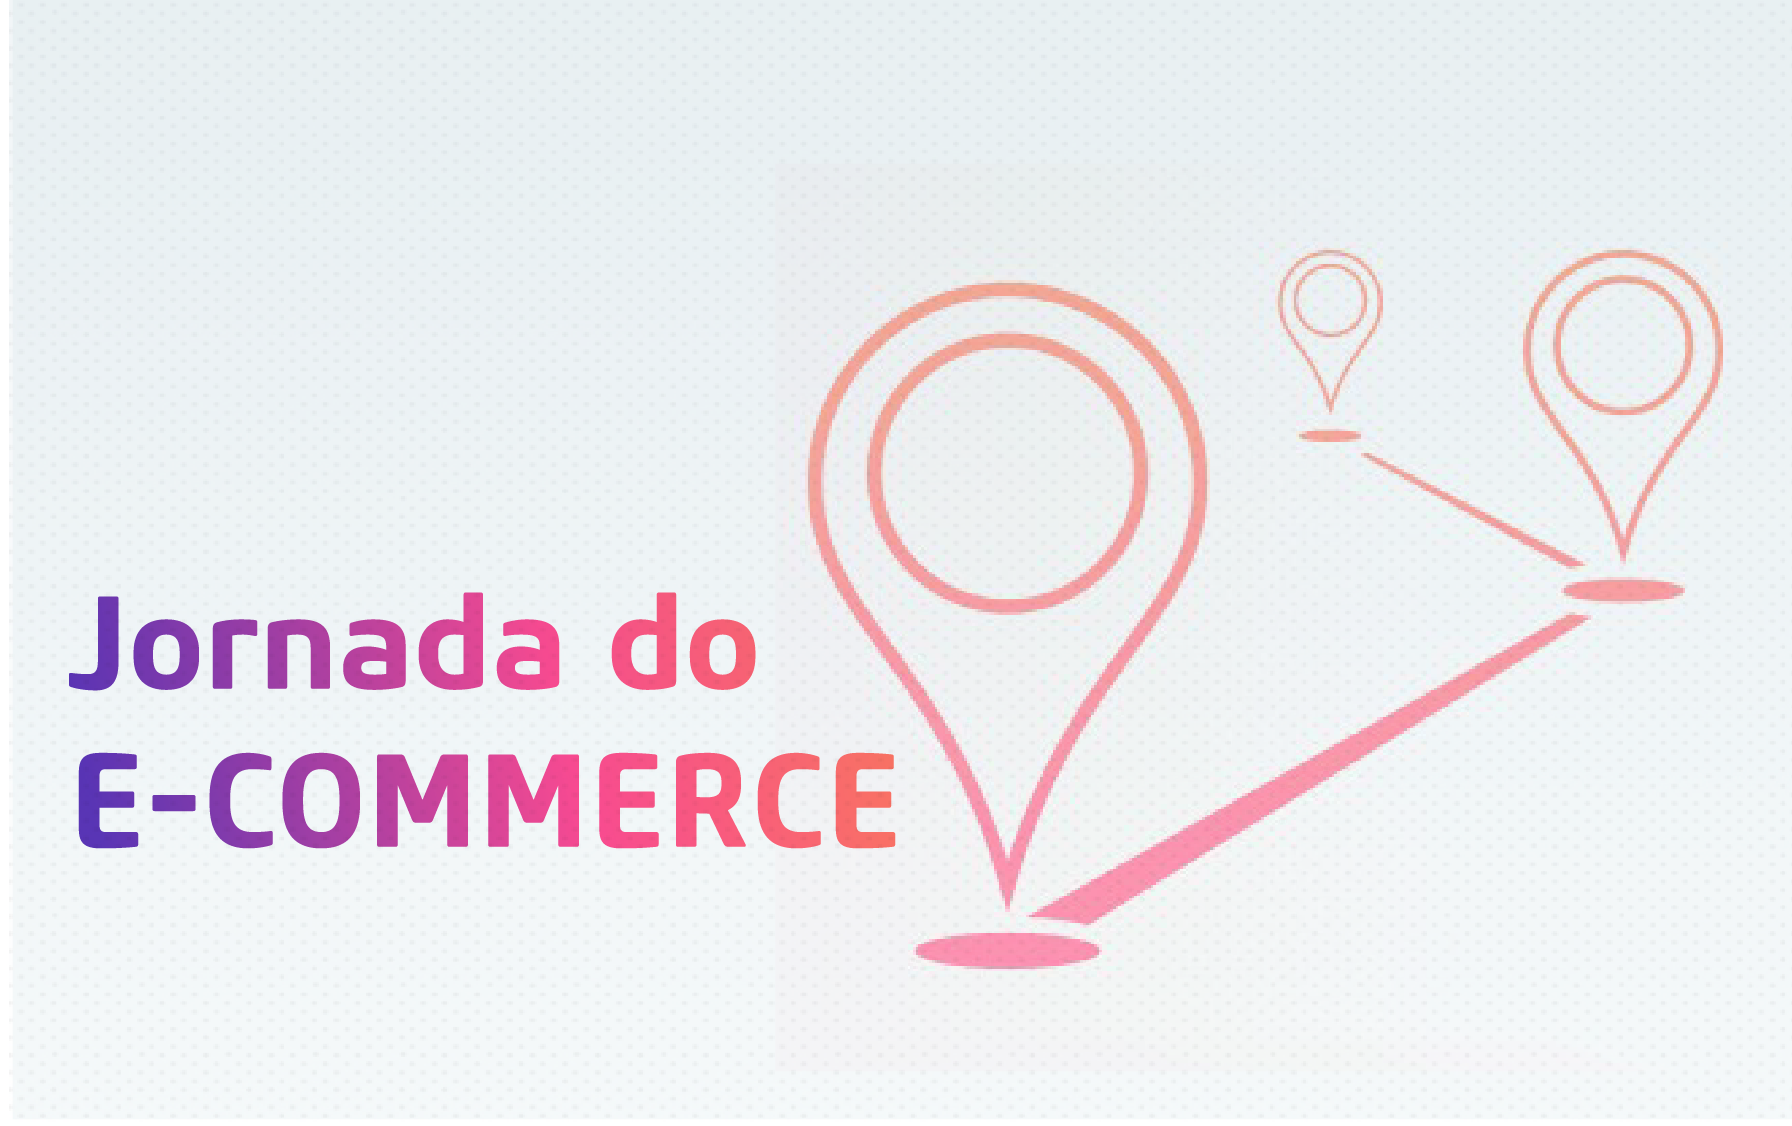 Jornada do e-commerce